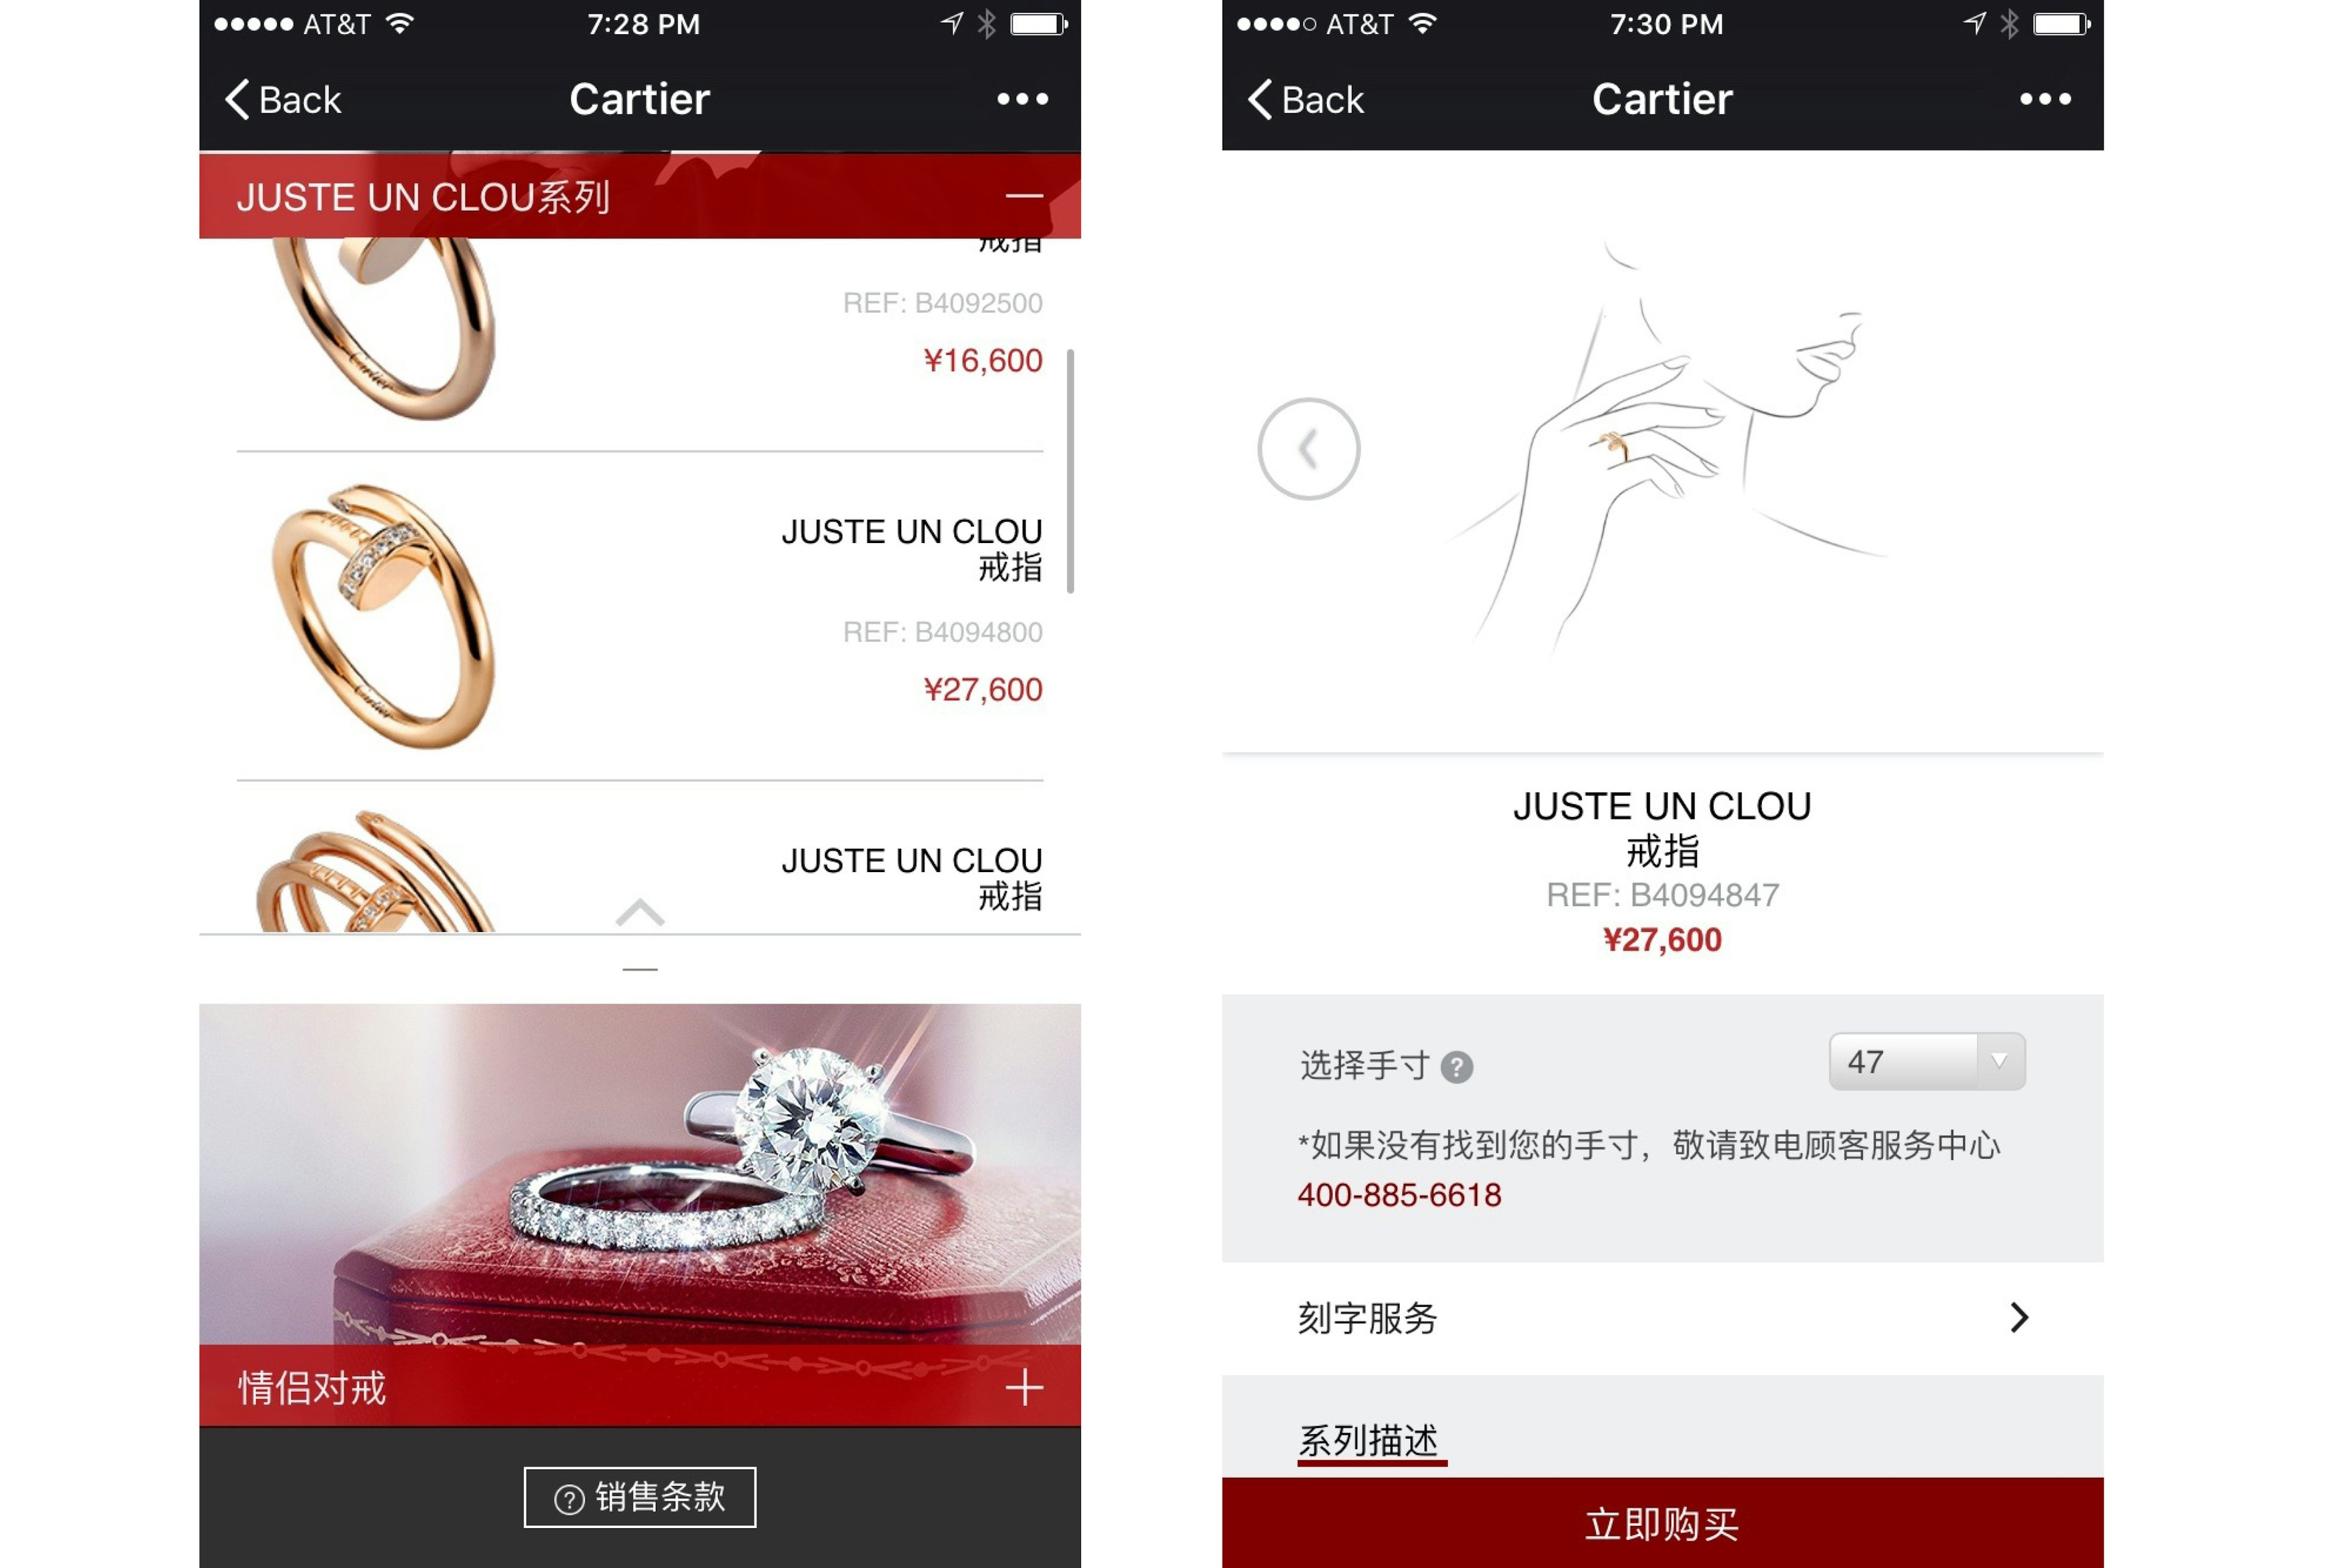 Cartier's WeChat shop.